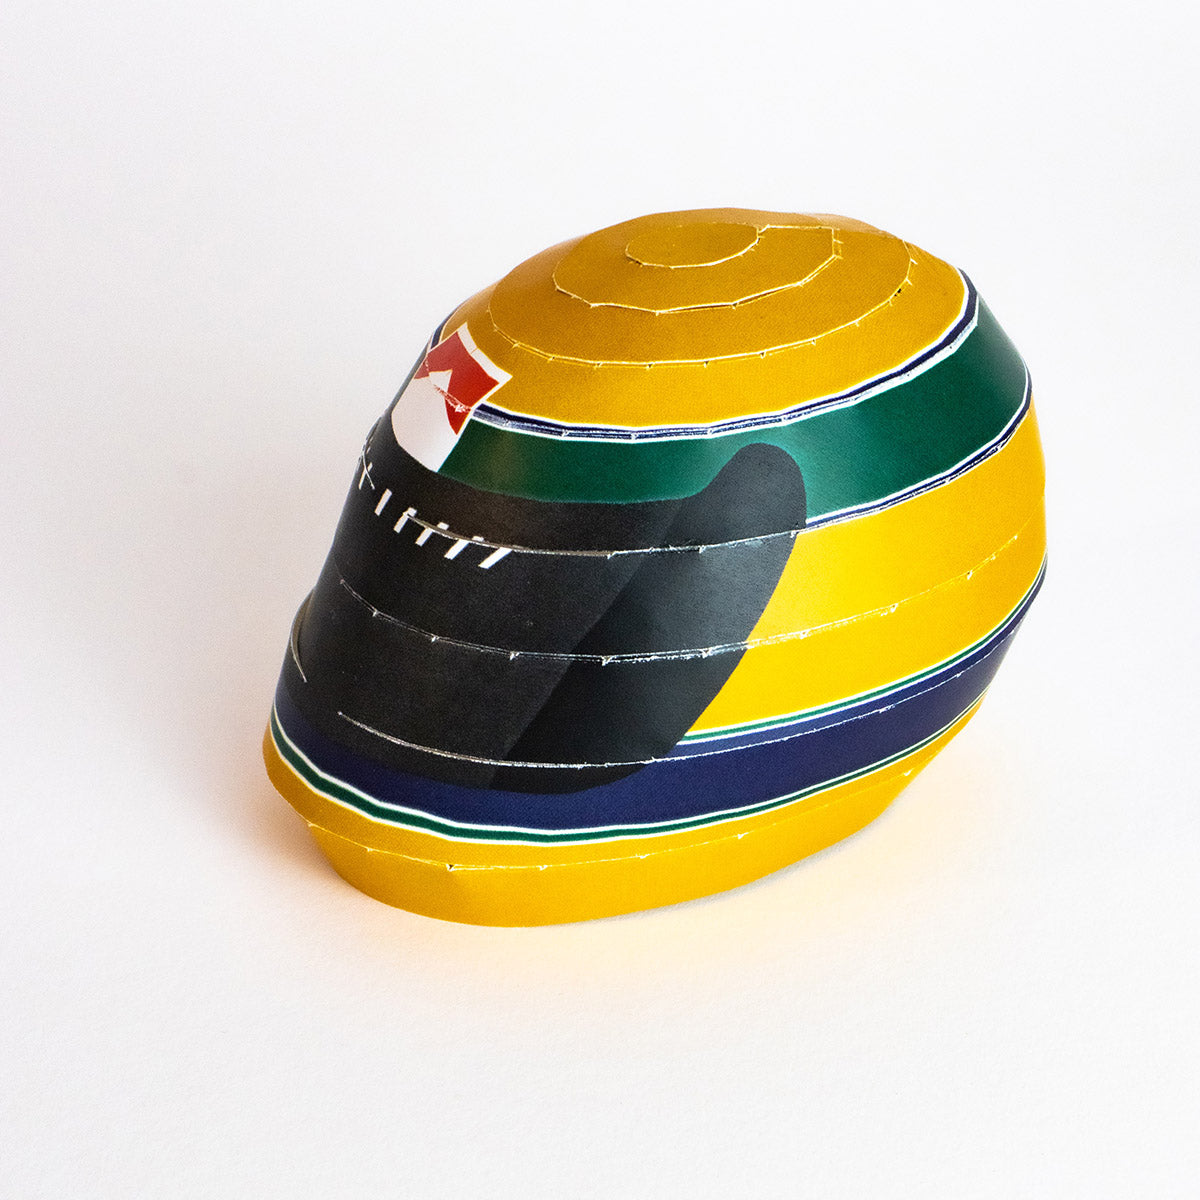 The Senna Helmet 1:4